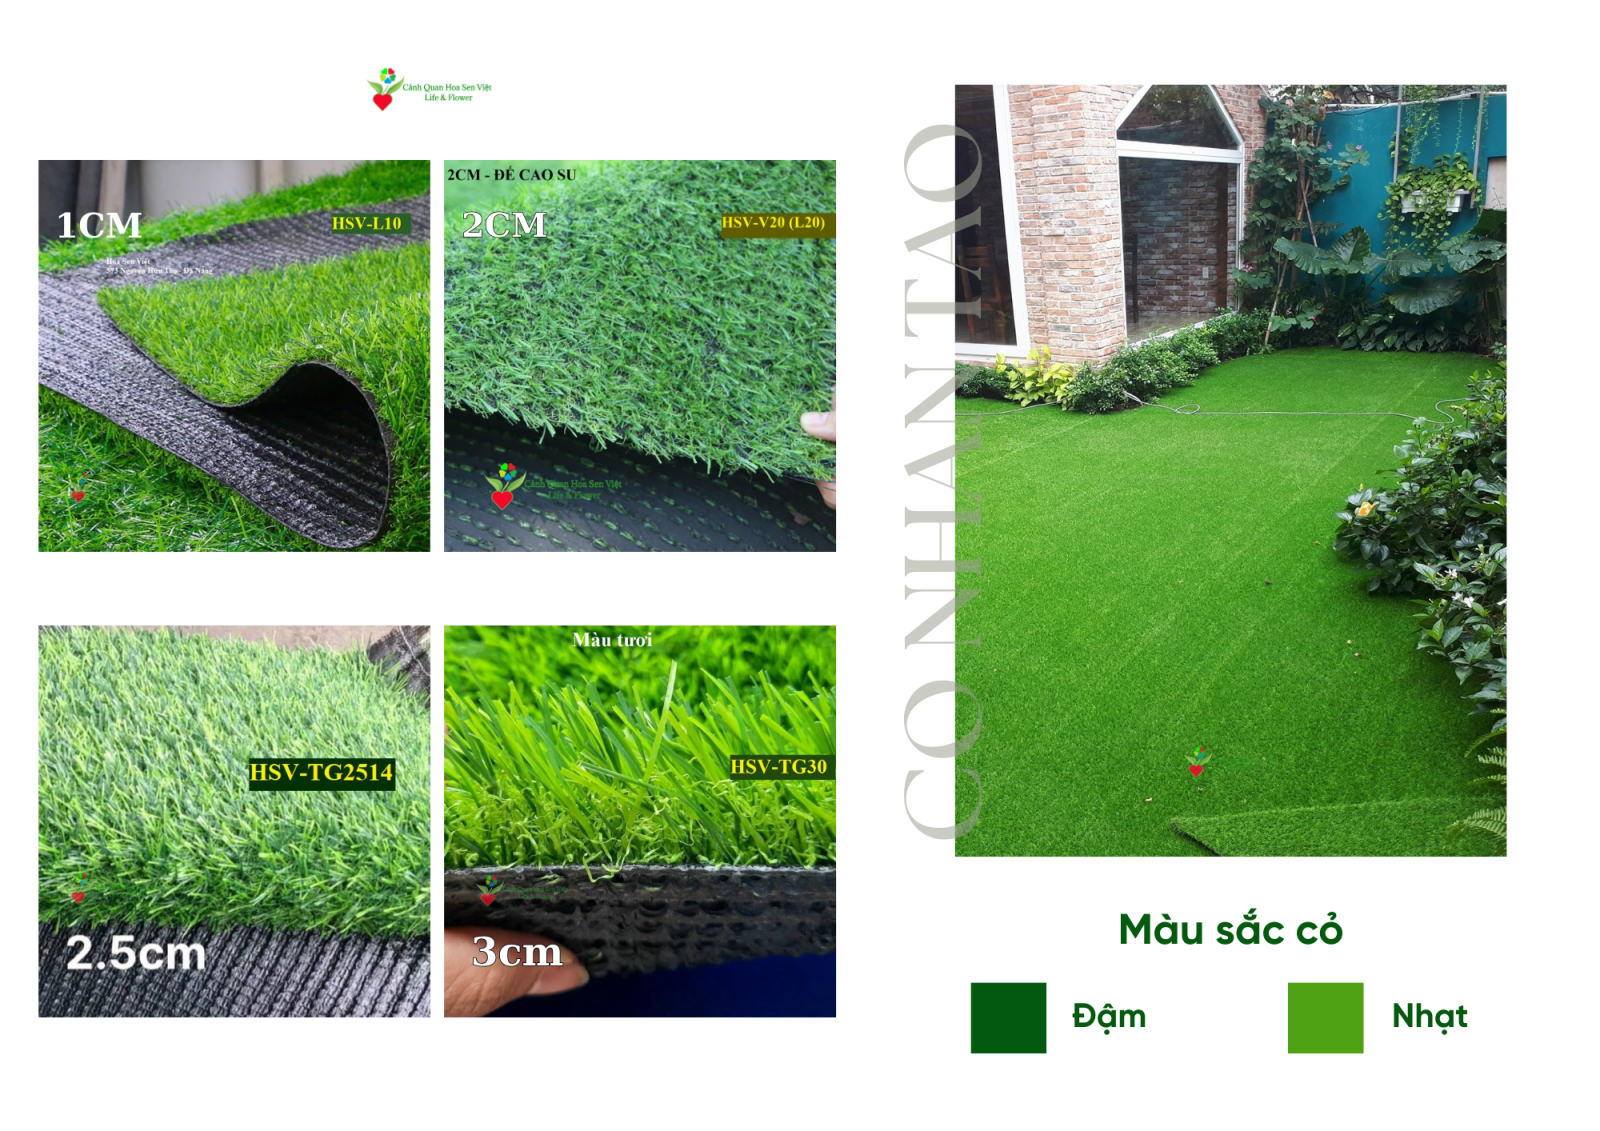 Thảm cỏ sân vườn - Cửa hàng thảm cỏ nhân tạo giá rẻ Đà Nẵng